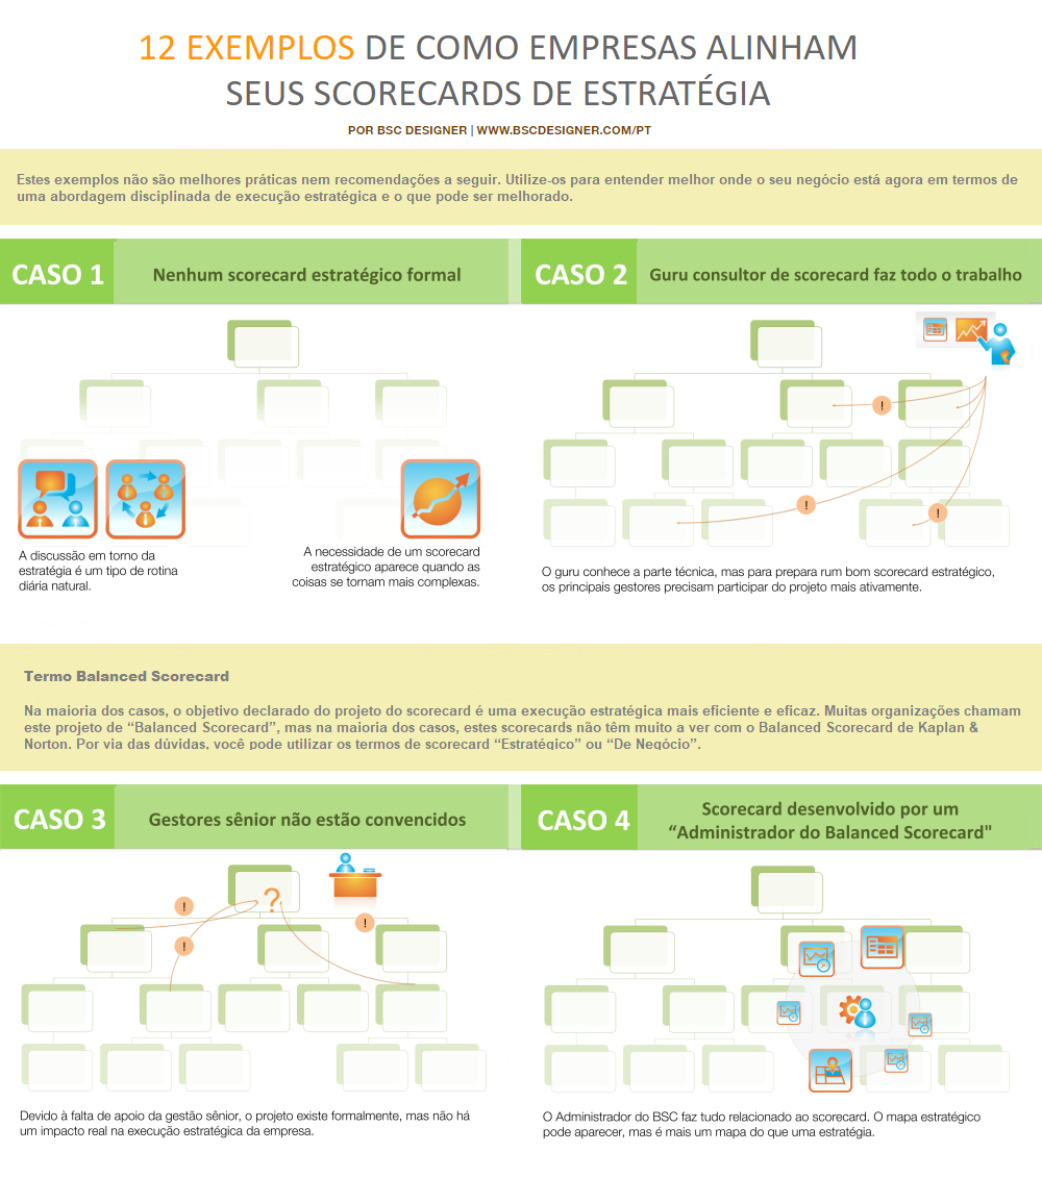 Infographic: 12 exemplos de alinhamento estratégico com Balanced Scorecard